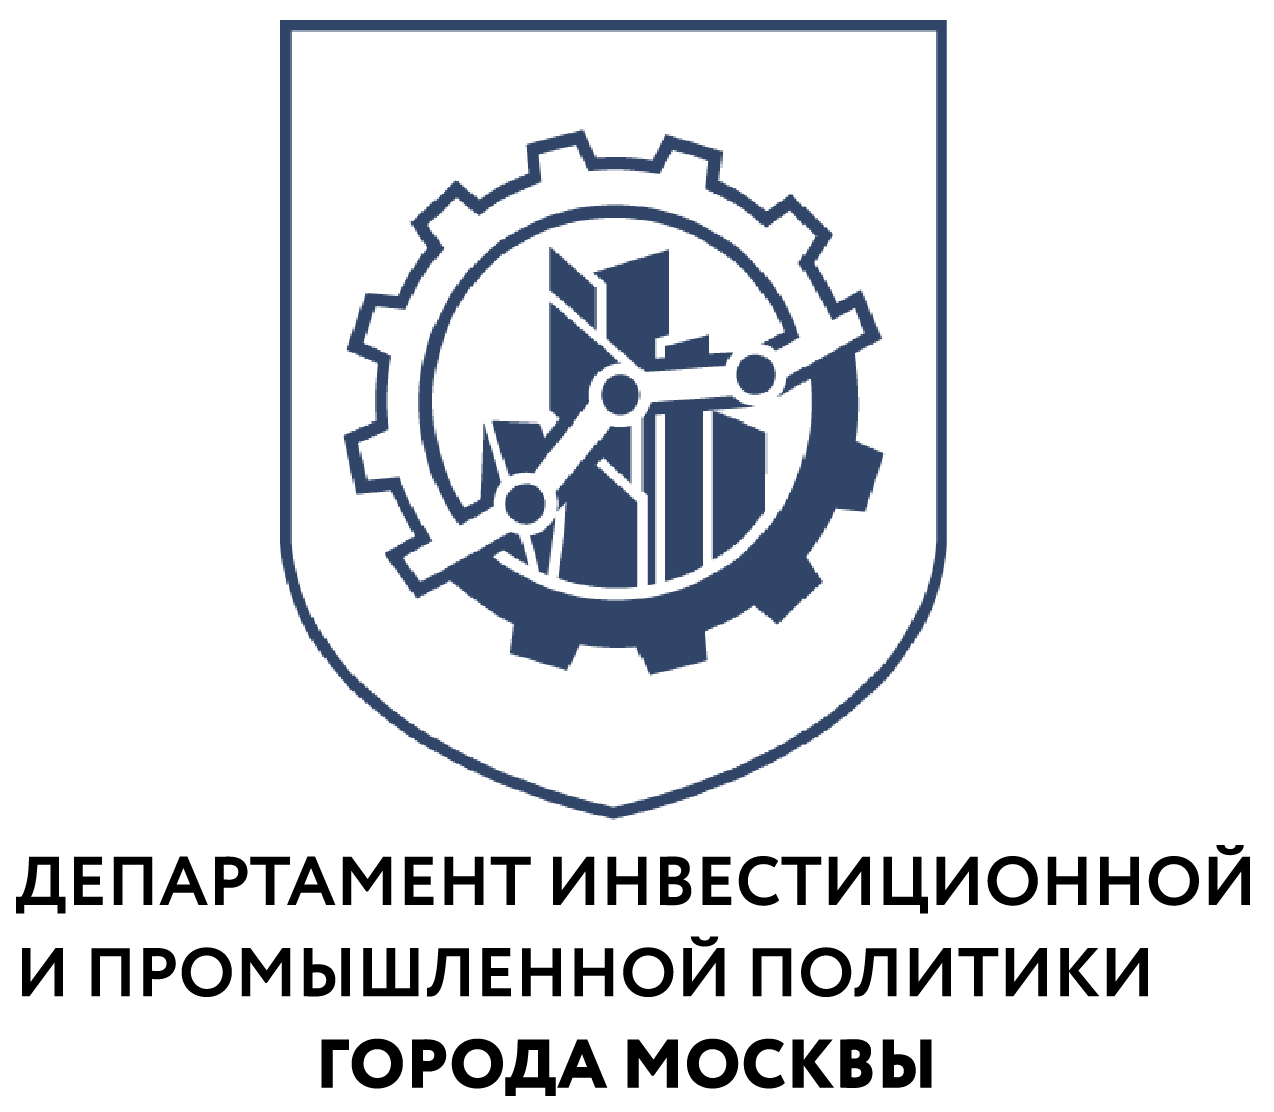 «Московская техническая школа» запустила новую образовательную программу по промышленному дизайну - фото 1